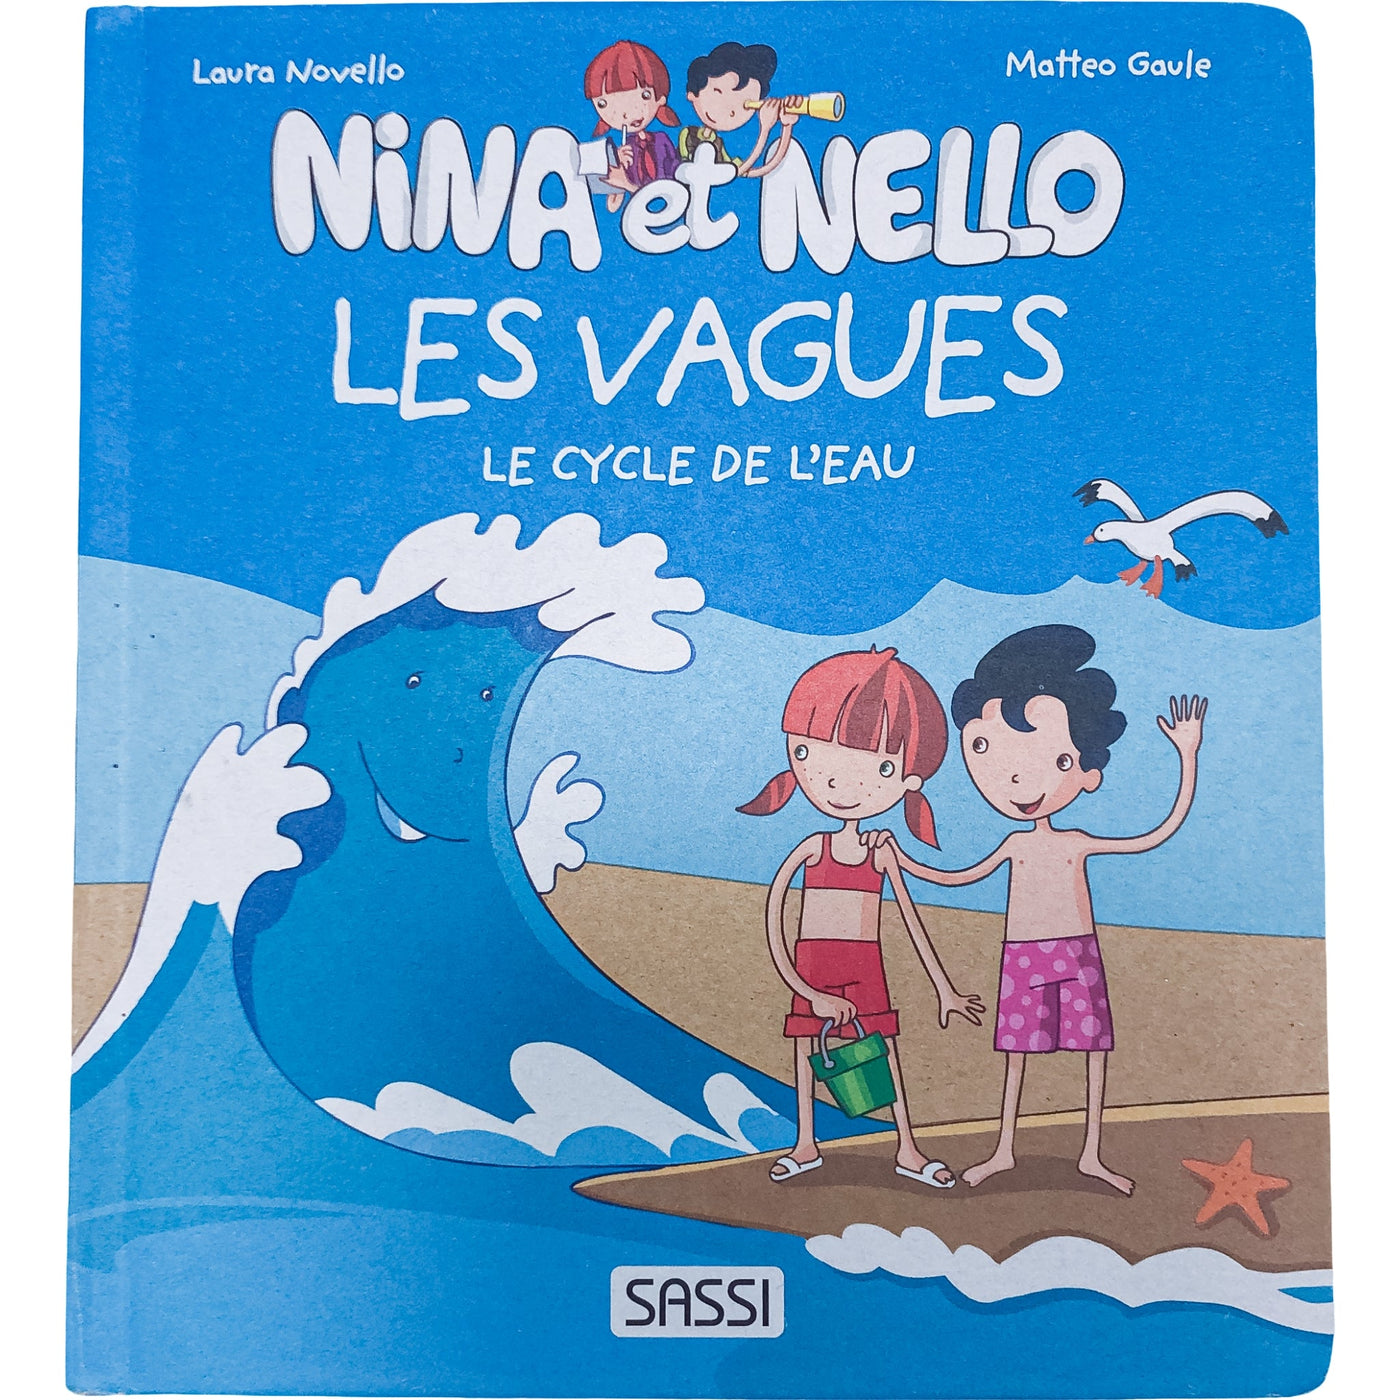 Livre documentaire "Nina et Nello - Les vagues - Le cycle de l'eau " de seconde main pour enfant à partir de 3 ans - photo principale